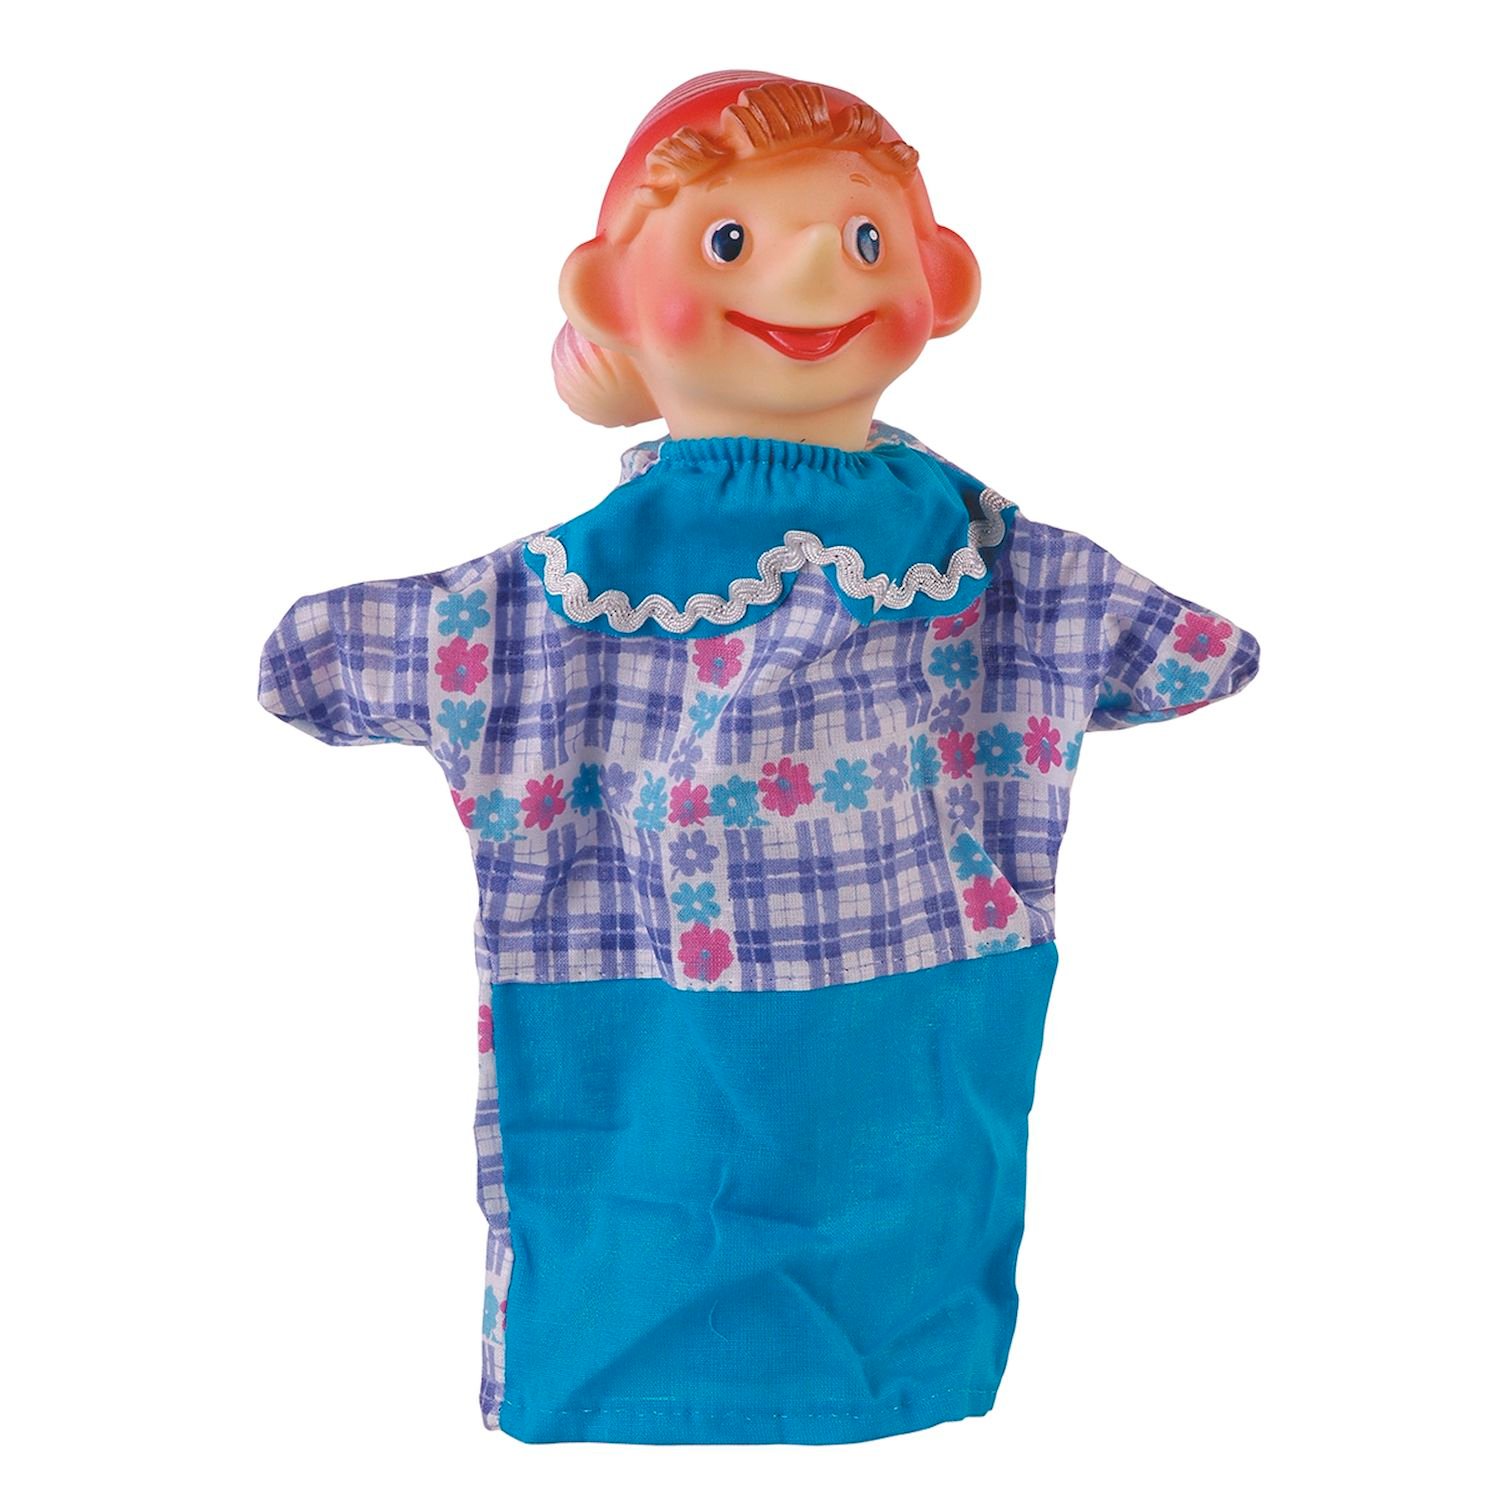 Кукла Буратино Купить В Интернет Магазине